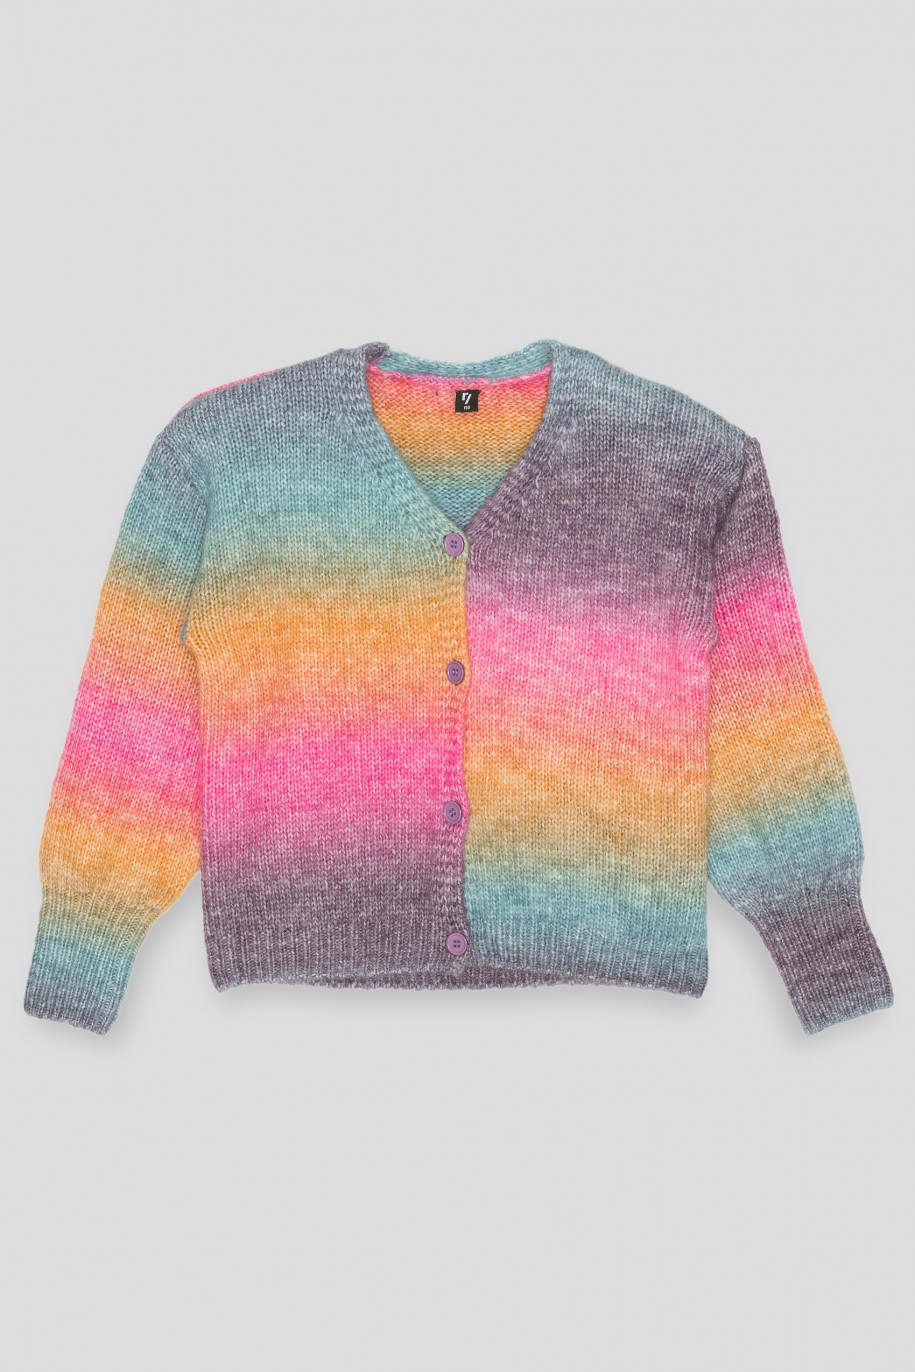 Wielobarwny pastelowy sweter na guziki - 39069